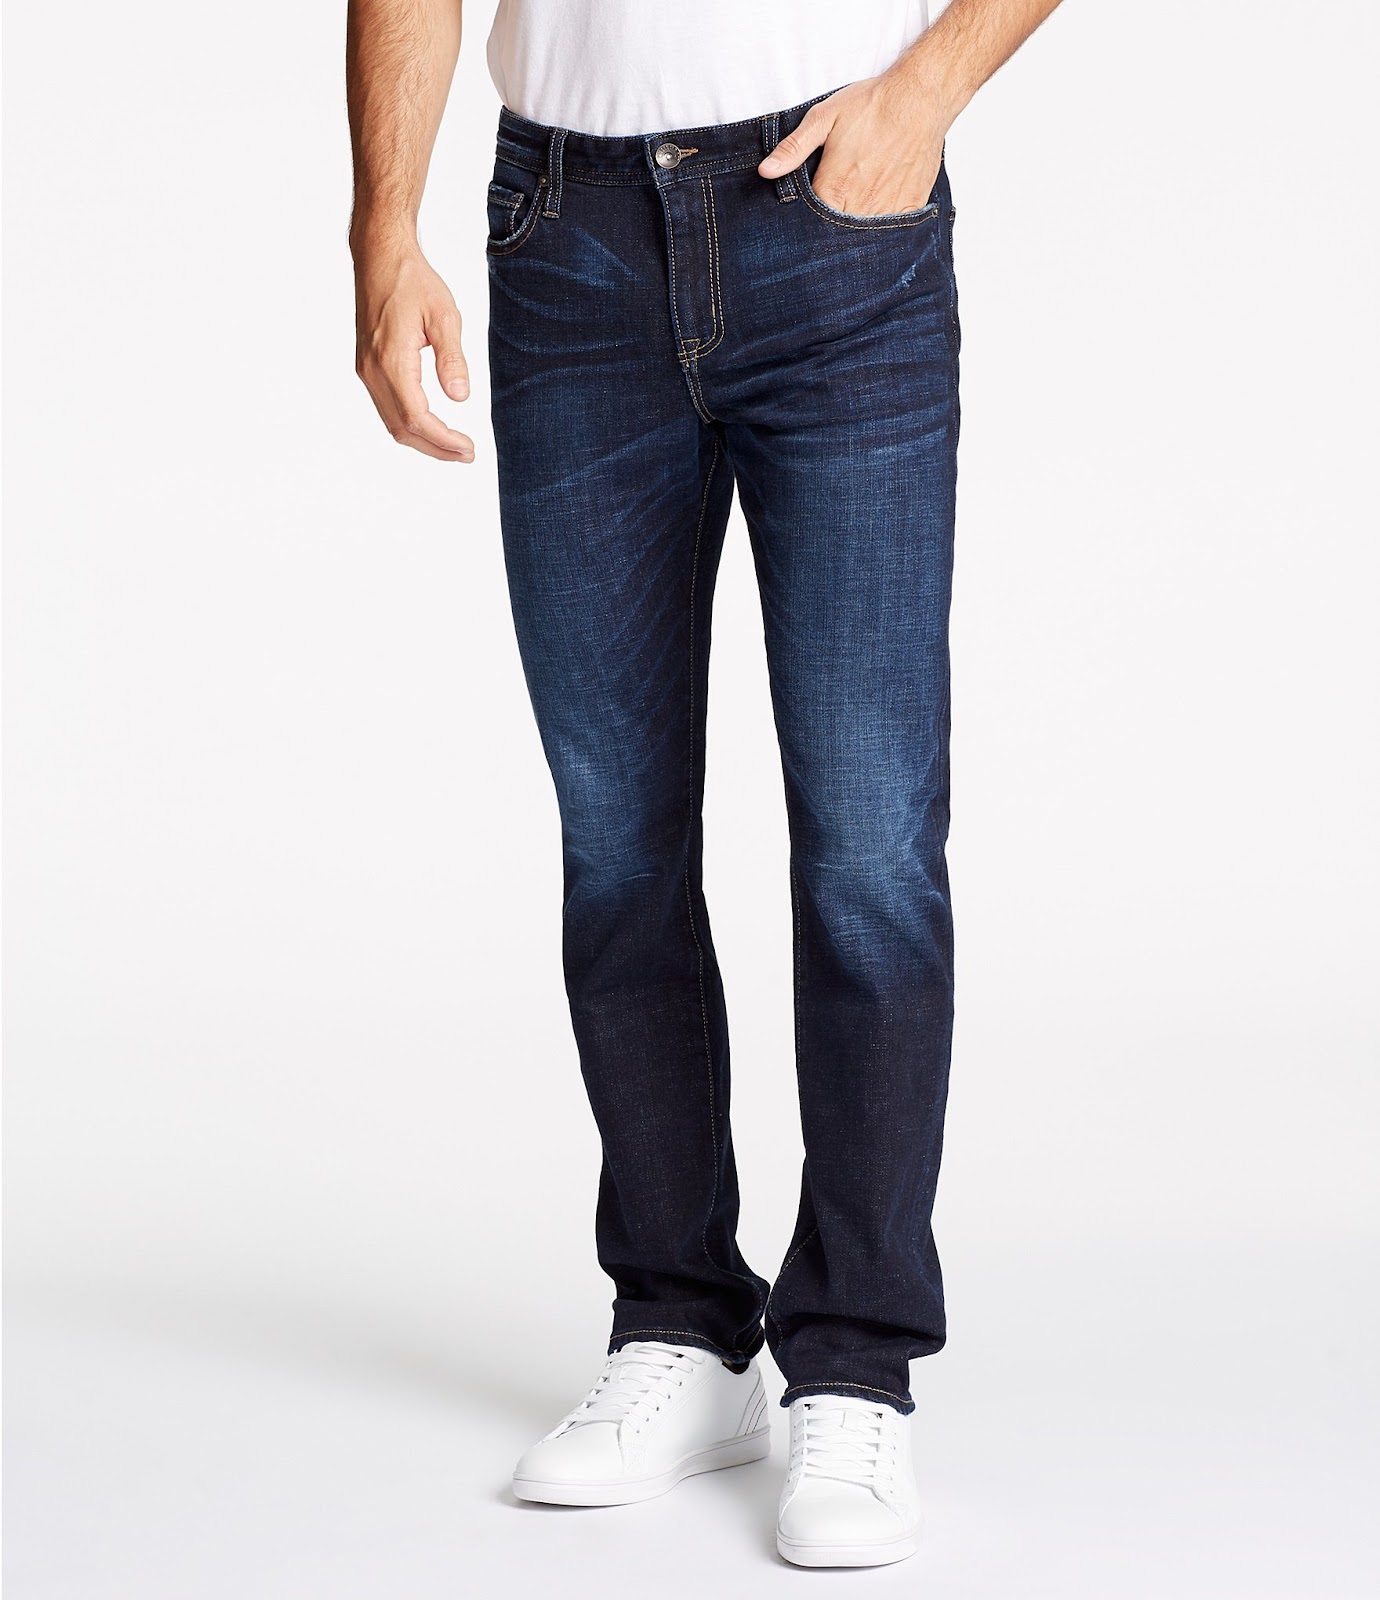 Image result for jeans men